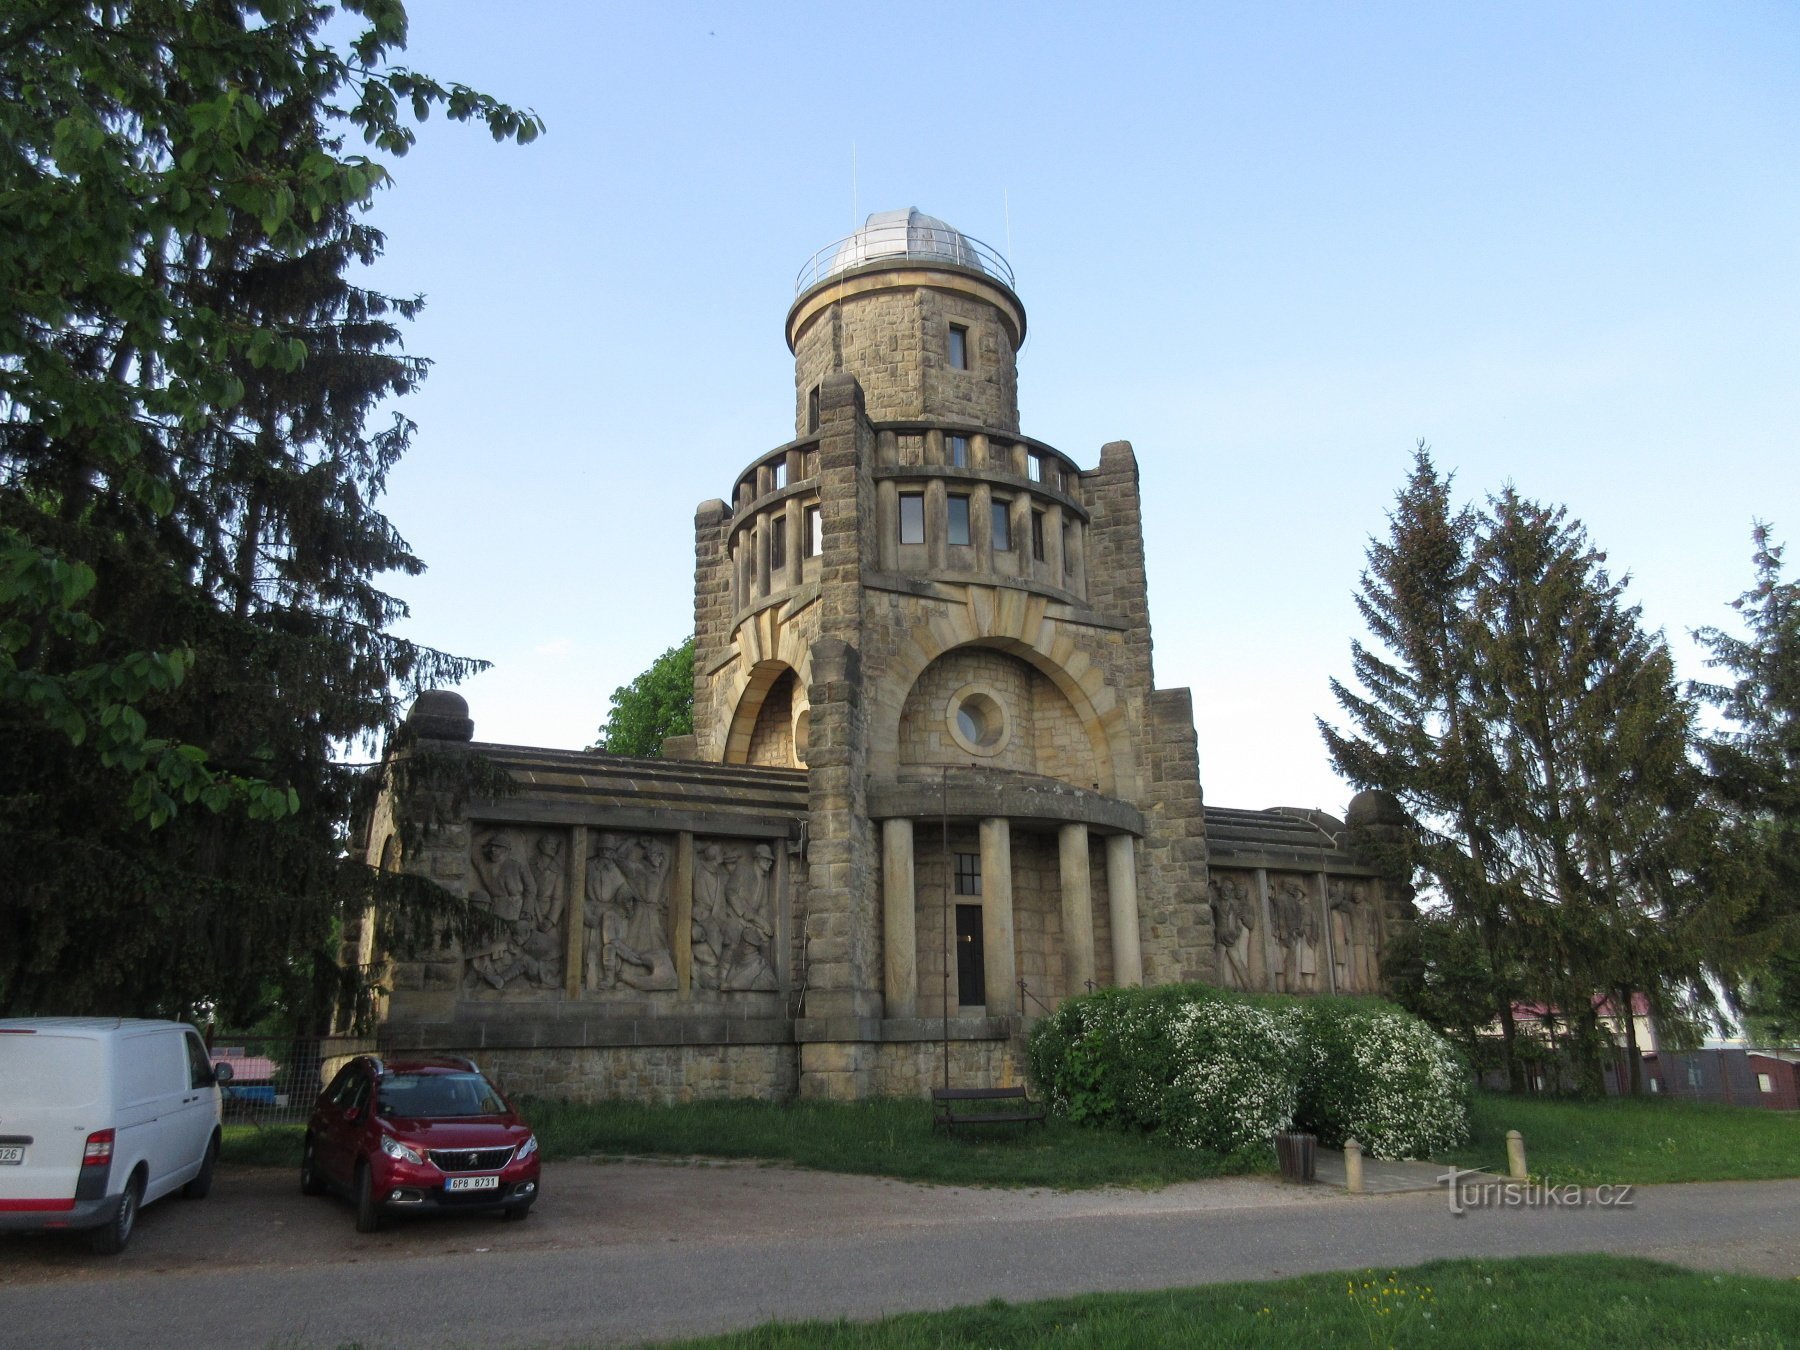 Masaryk-Turm der Unabhängigkeit in Hořice im Podkrkonoší